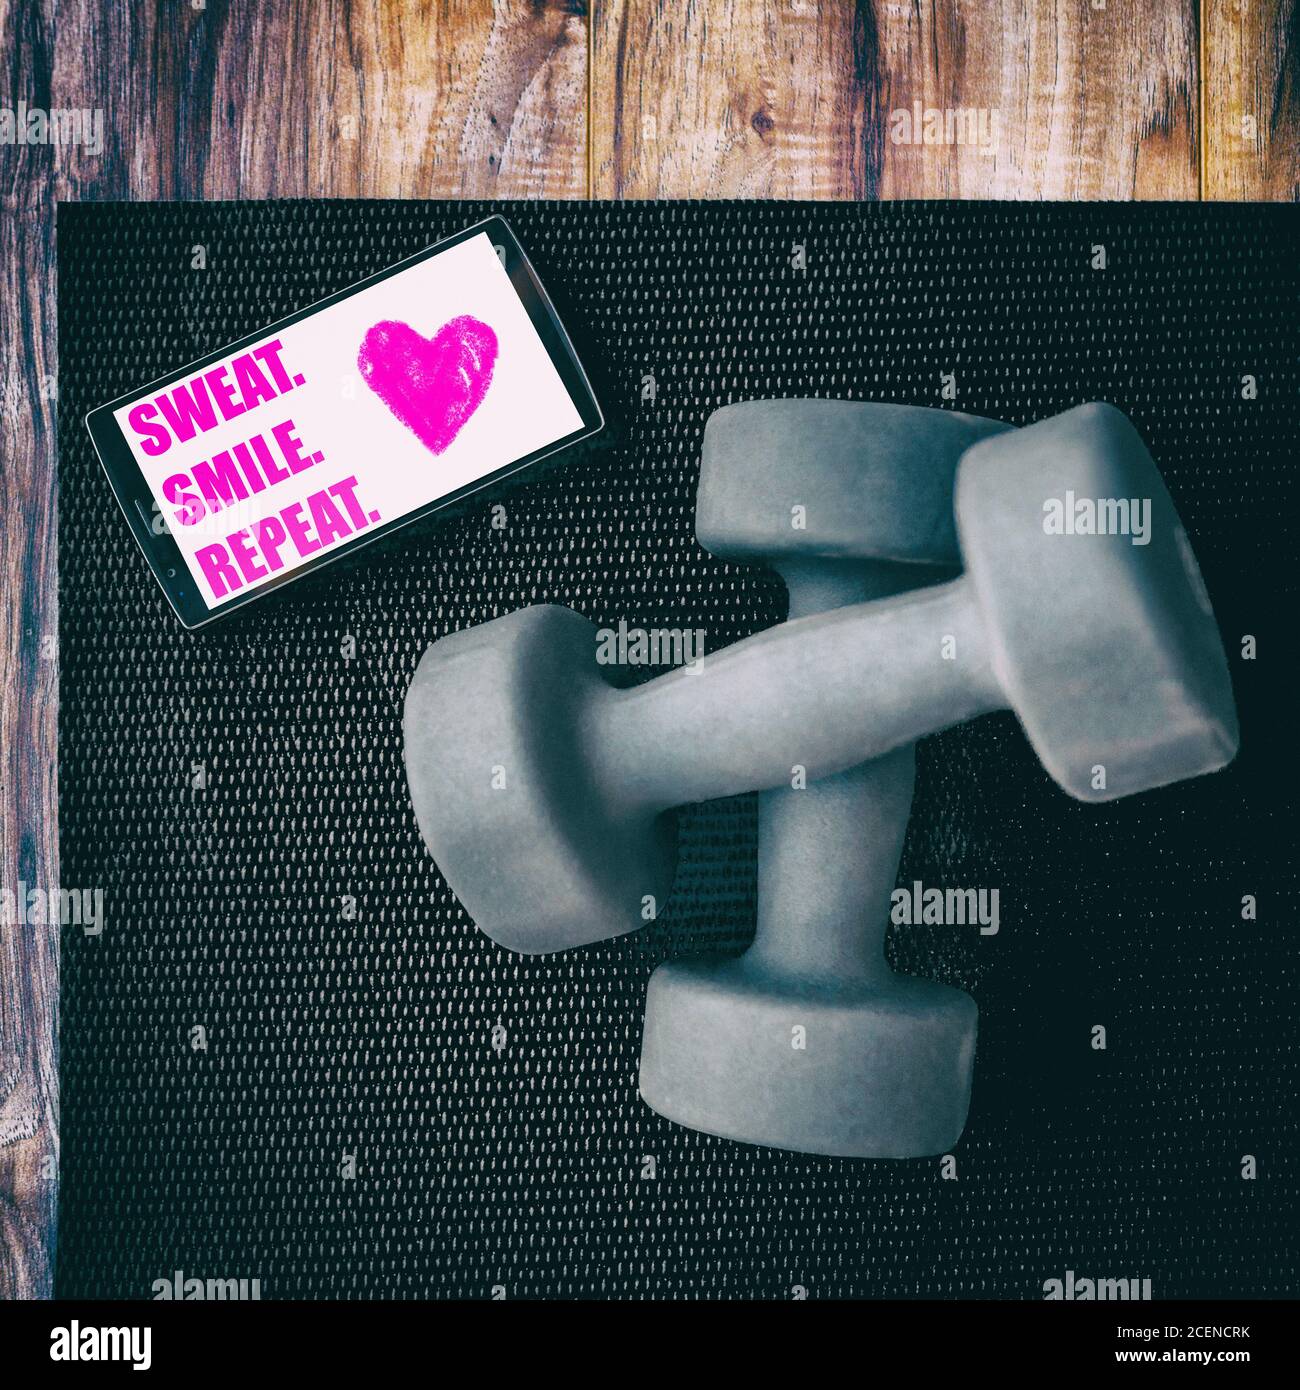 Gym fitness motivation citation SUEUR SOURIRE RÉPÉTER photo pour les médias sociaux instagram. Des citations d'inspiration positives pour motiver à faire de l'exercice écrites Banque D'Images